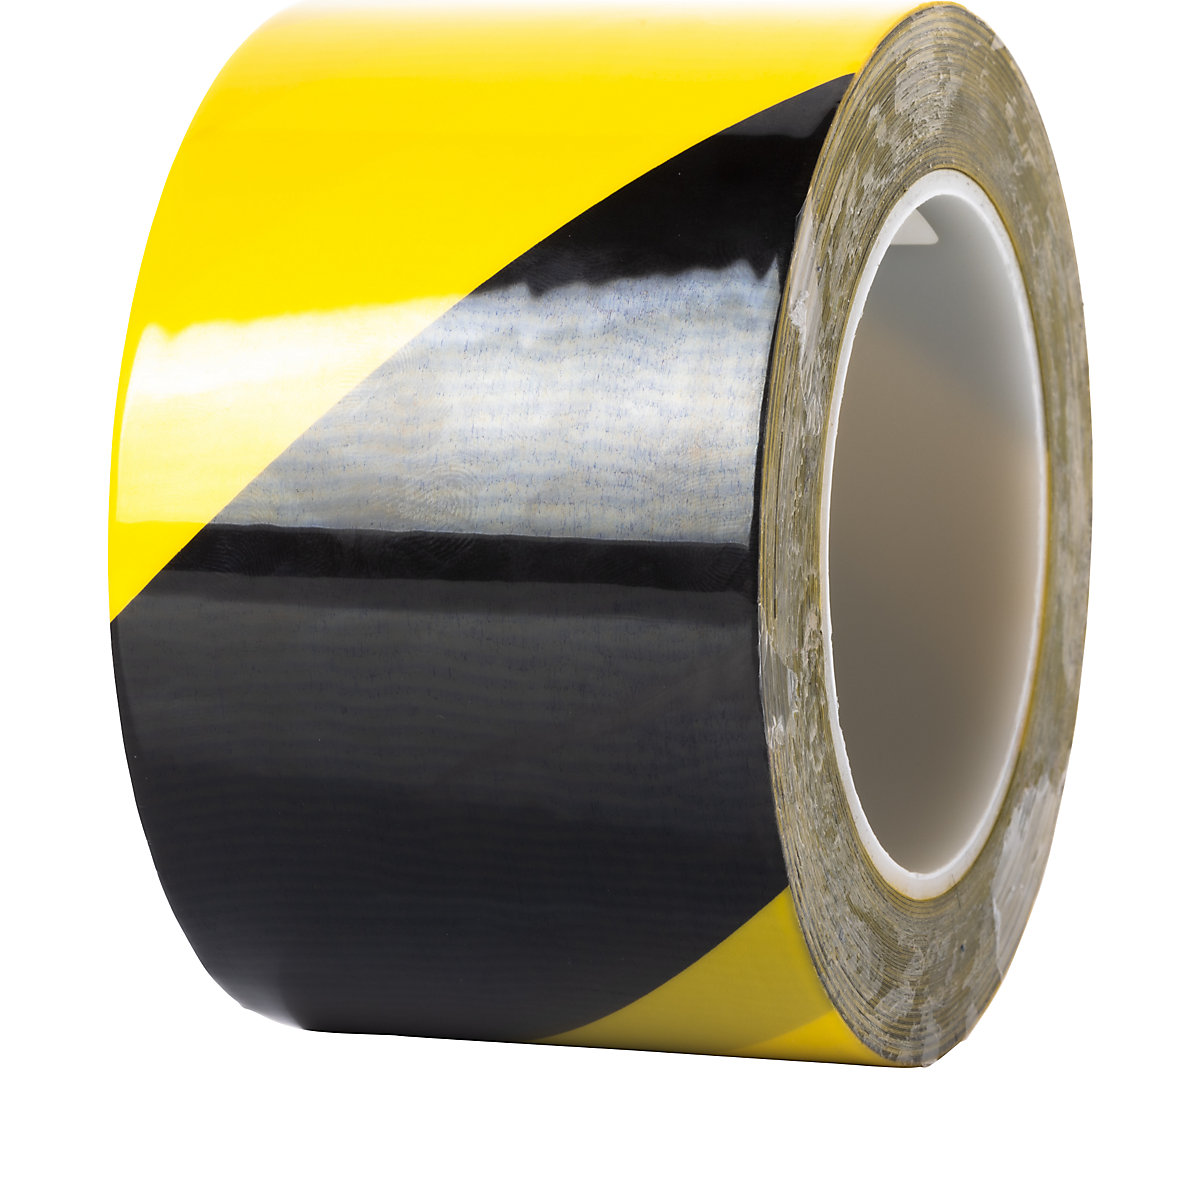 Extraerős padlójelölő szalag – Ampere, szélesség 75 mm, vastagság 0,2 mm, sárga/fekete-2